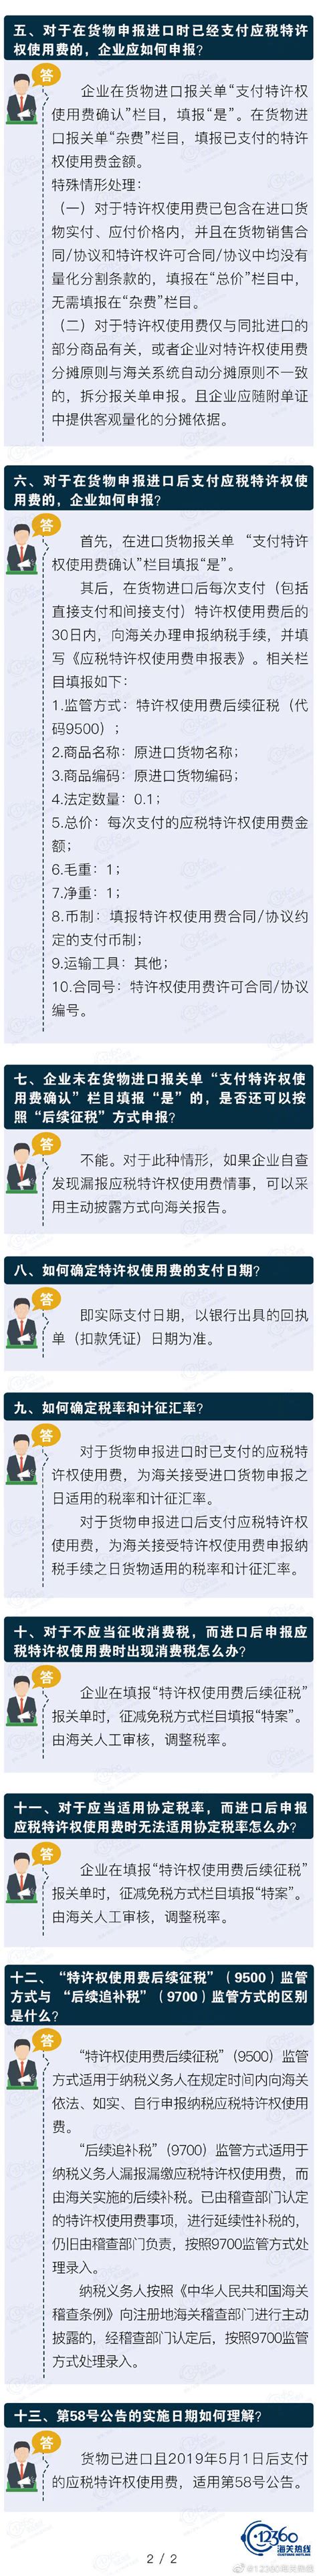 【图解】海关总署2019年第58号公告相关问题解答--深圳市人民政府口岸办公室网站